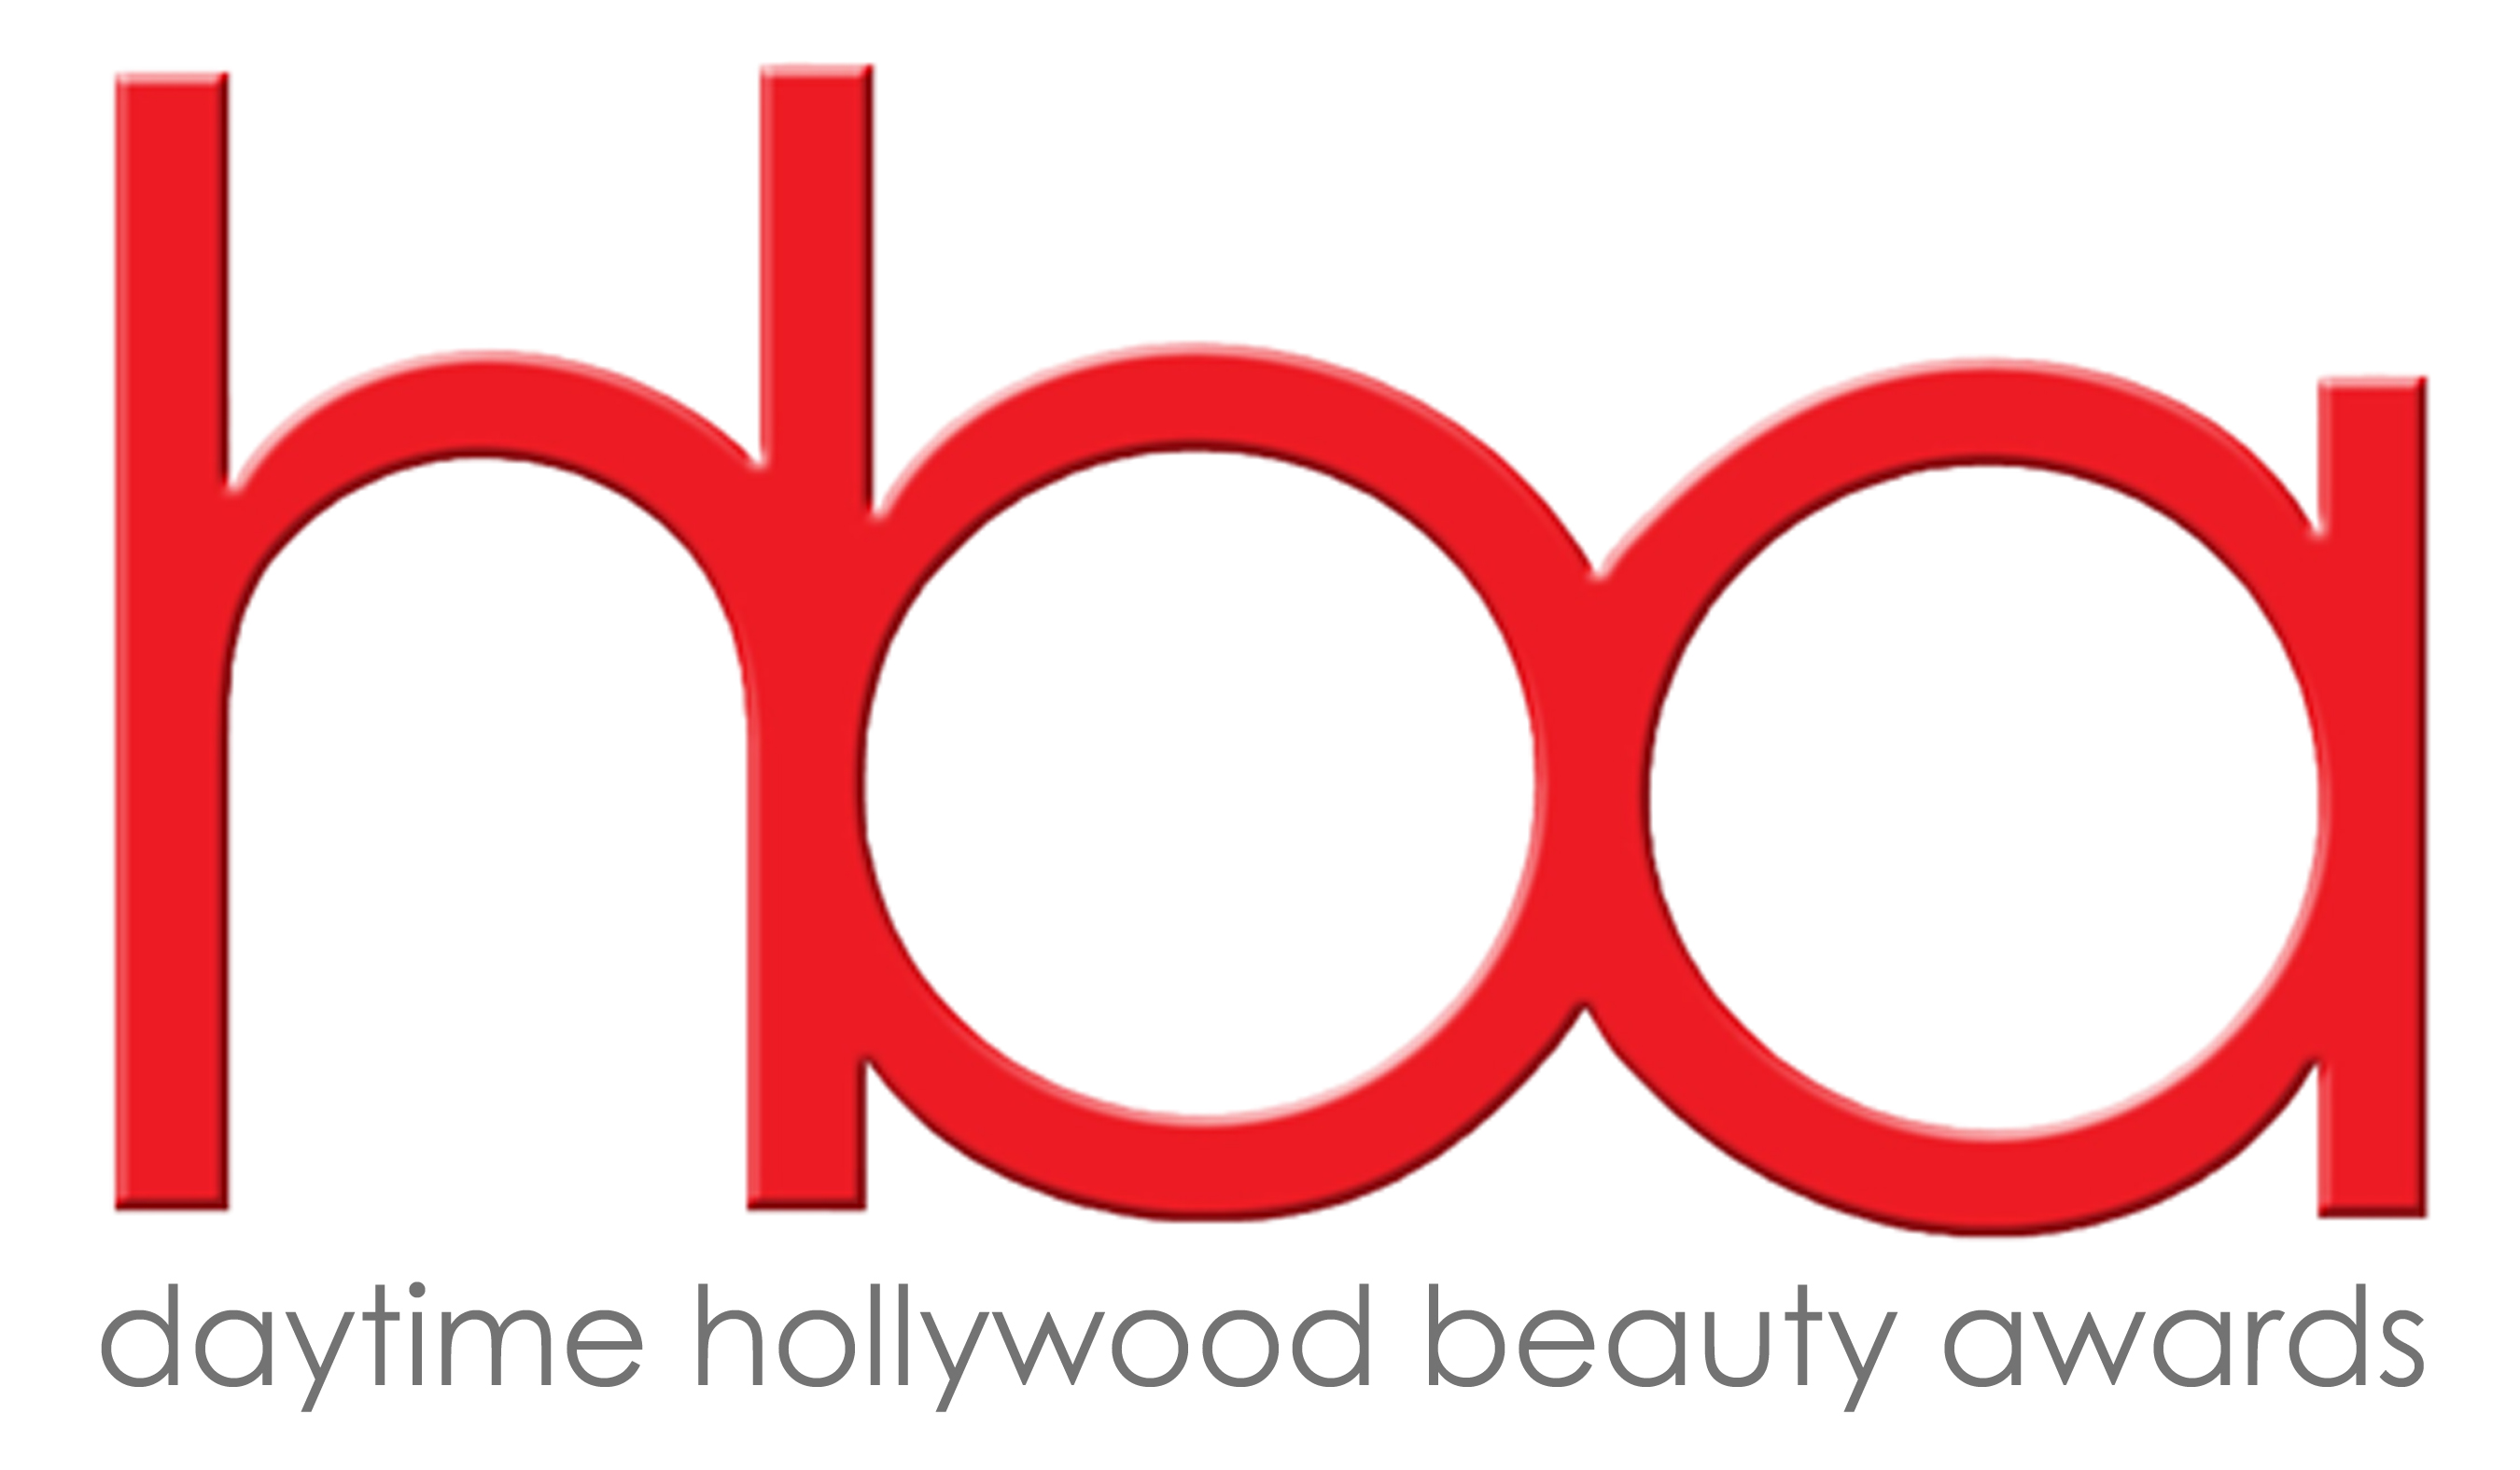 daytime hollywood beauty awards, logo